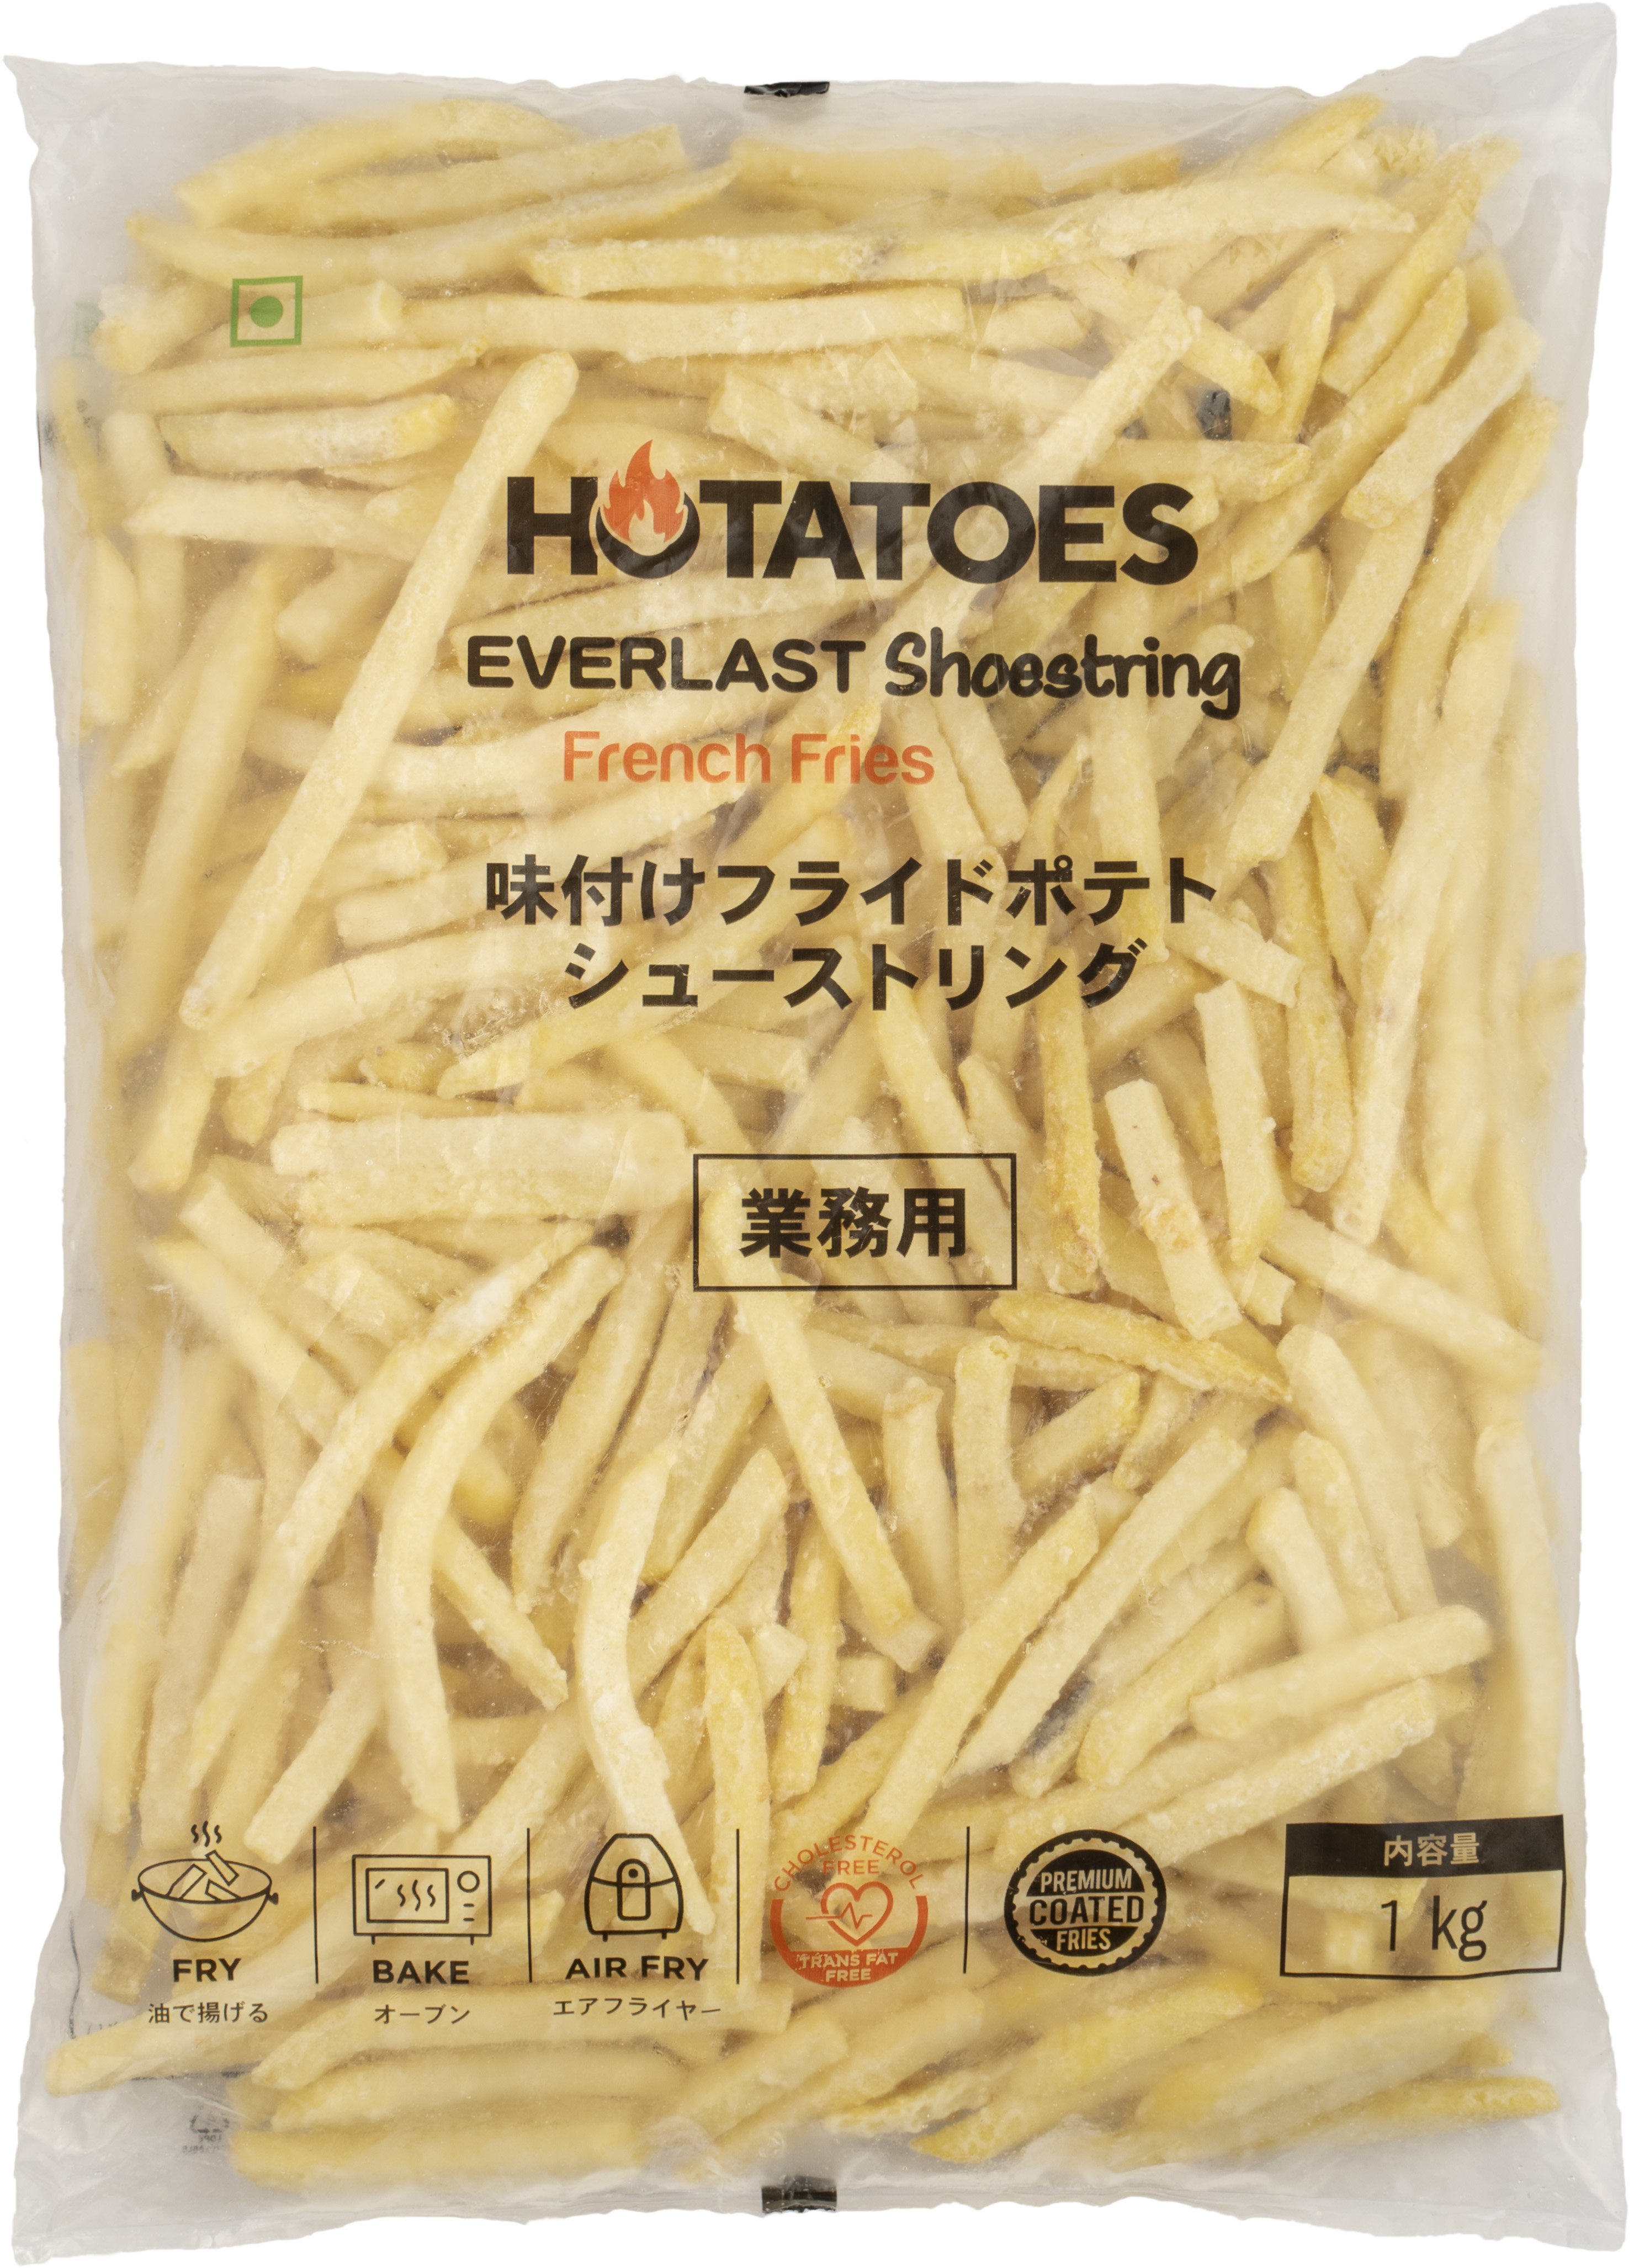 Hotatoes Everlast 冷凍フライドポテト 1kg/12（シューストリング・味付きコーティング）